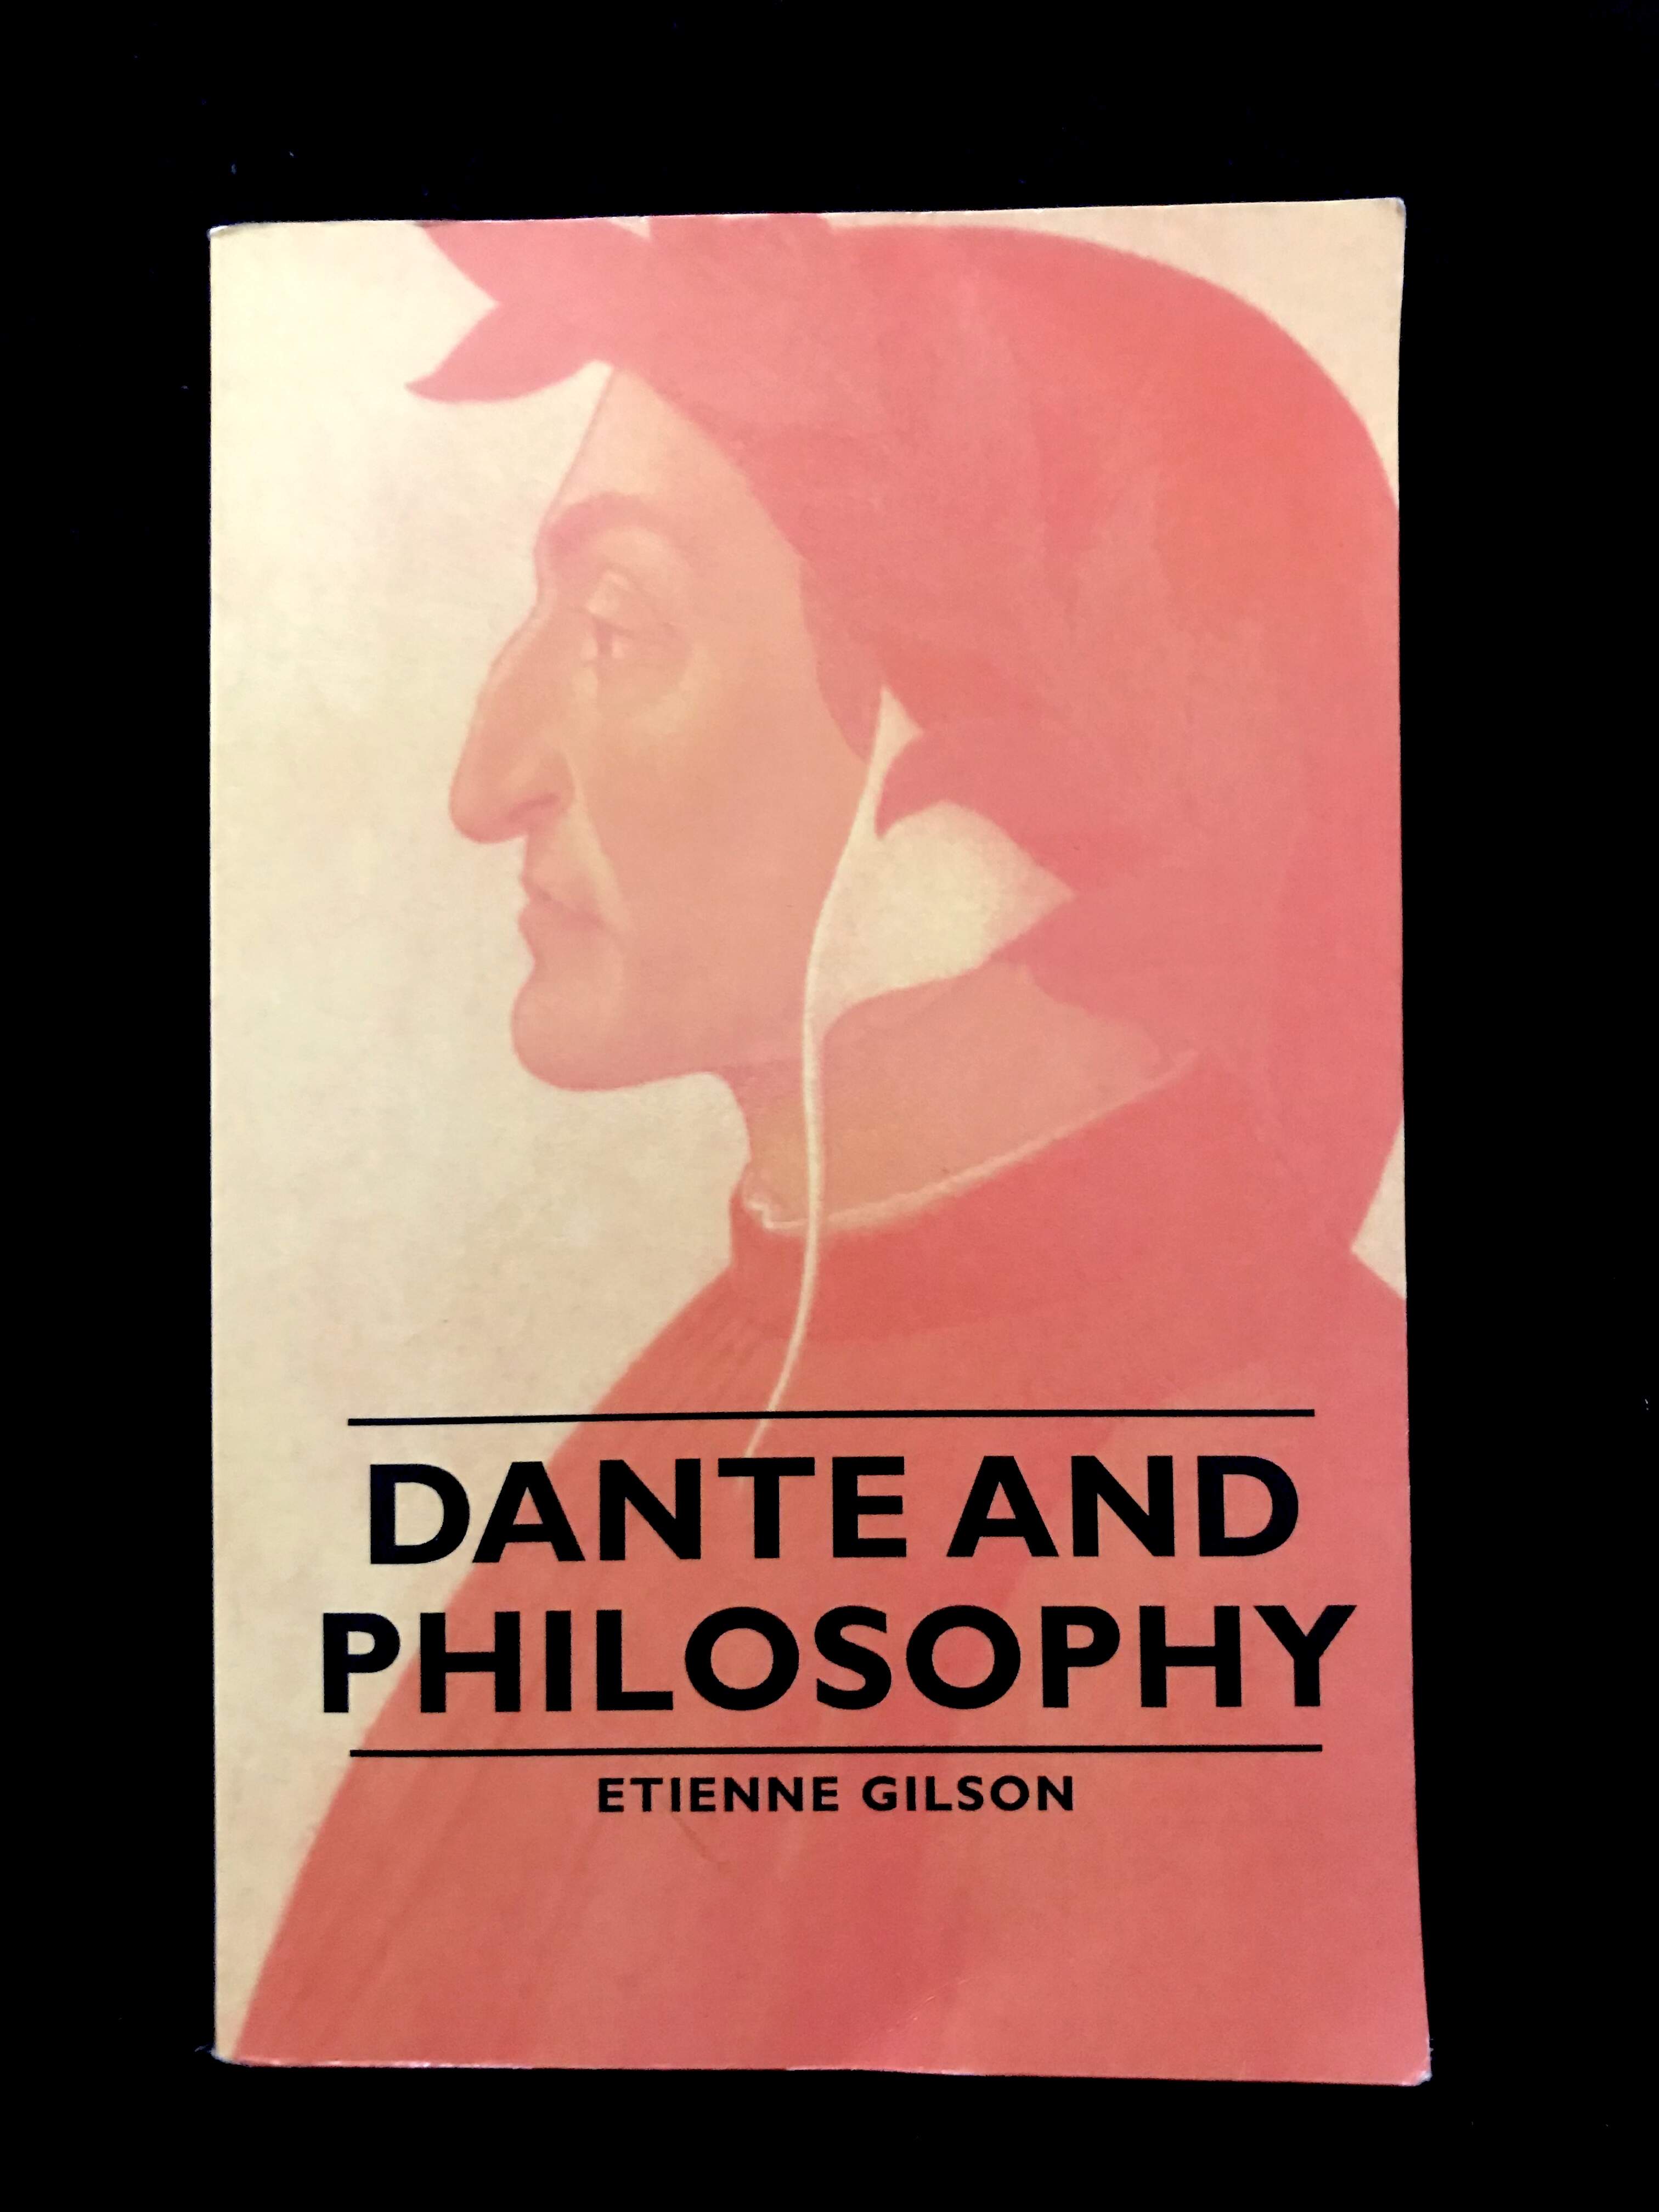 Dante & Philosophy by Etienne Gilson